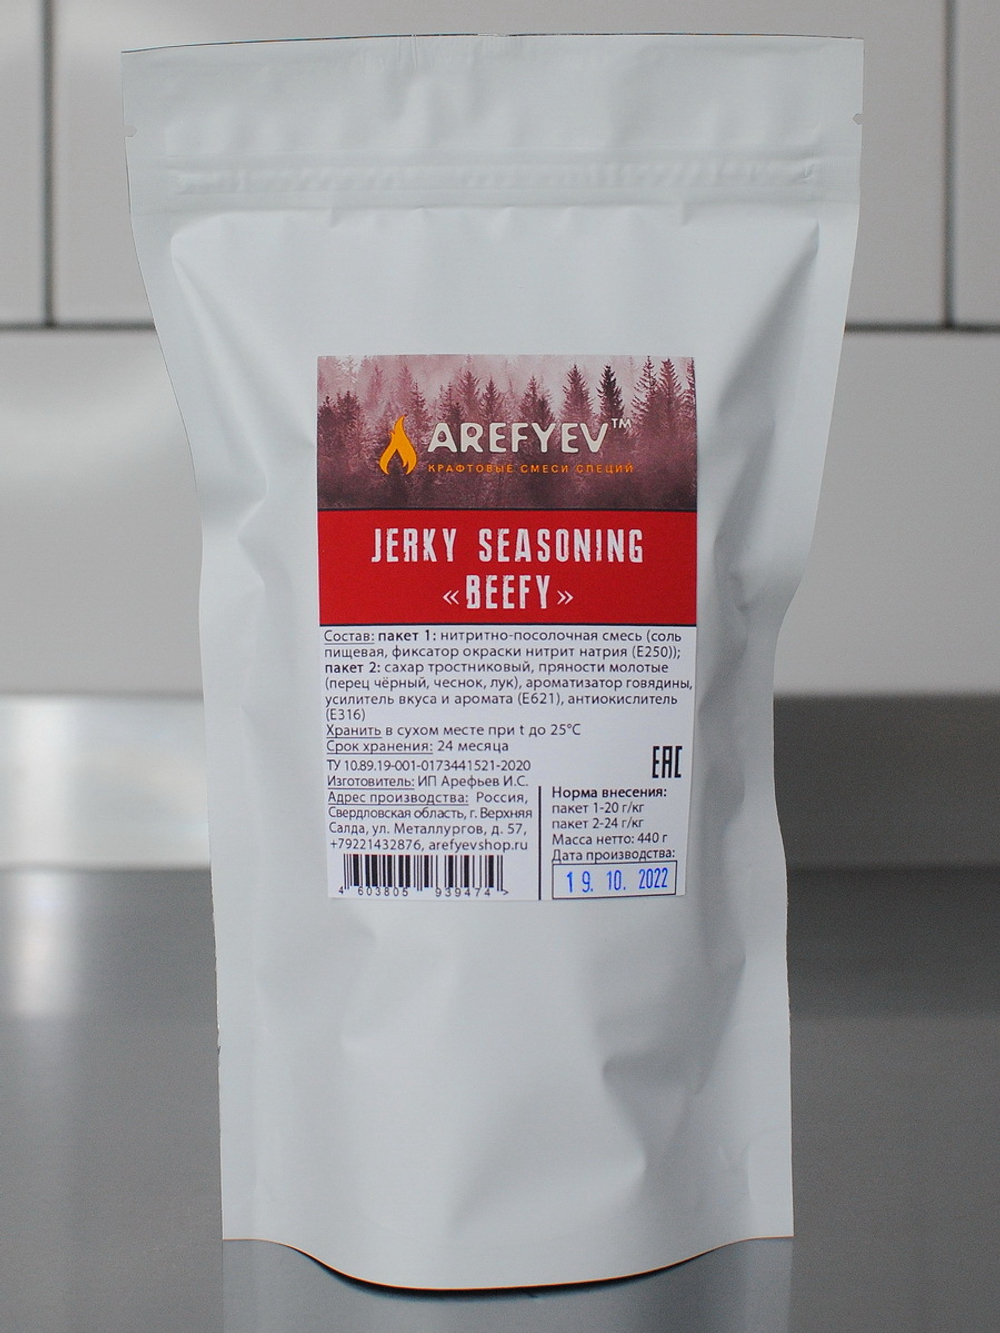 Jerky Seasoning "Beefy". Смесь для джерок.